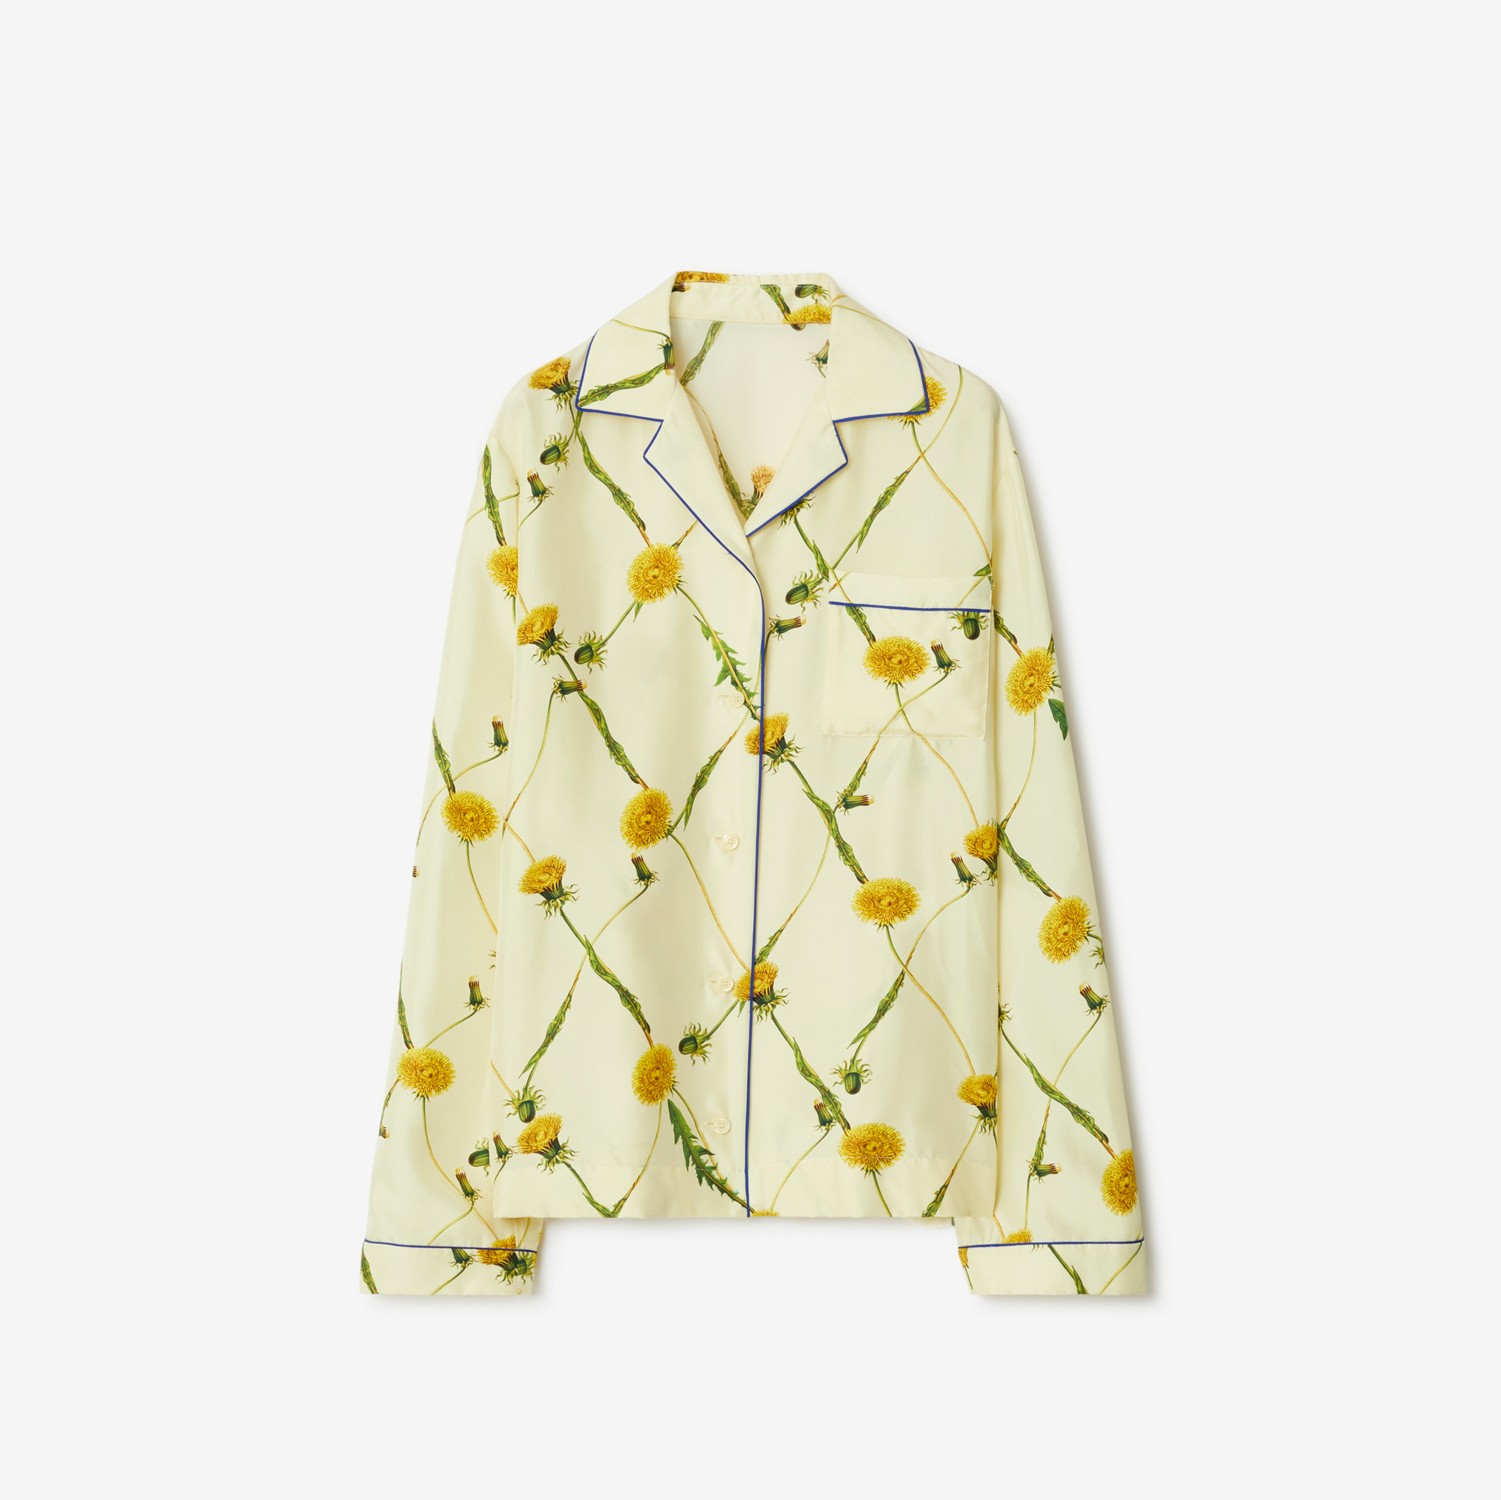 Camisa estilo pijama de seda com estampa de dentes-de-leão